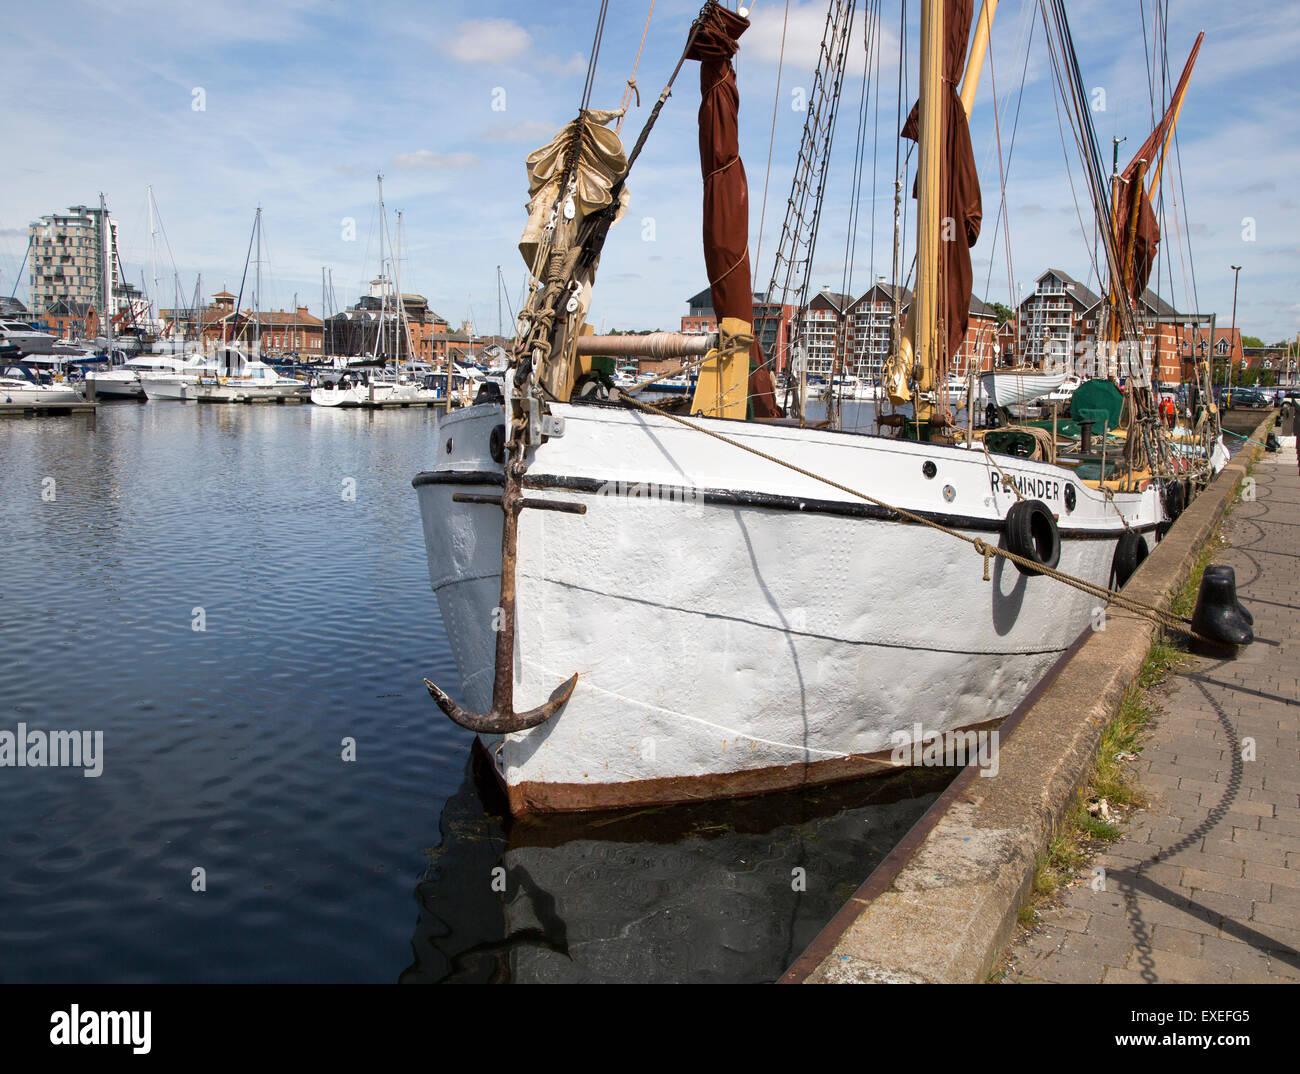 Barge à voile historique quai amarrage dans le bassin à flot, Ipswich, Suffolk, Angleterre, RU Banque D'Images